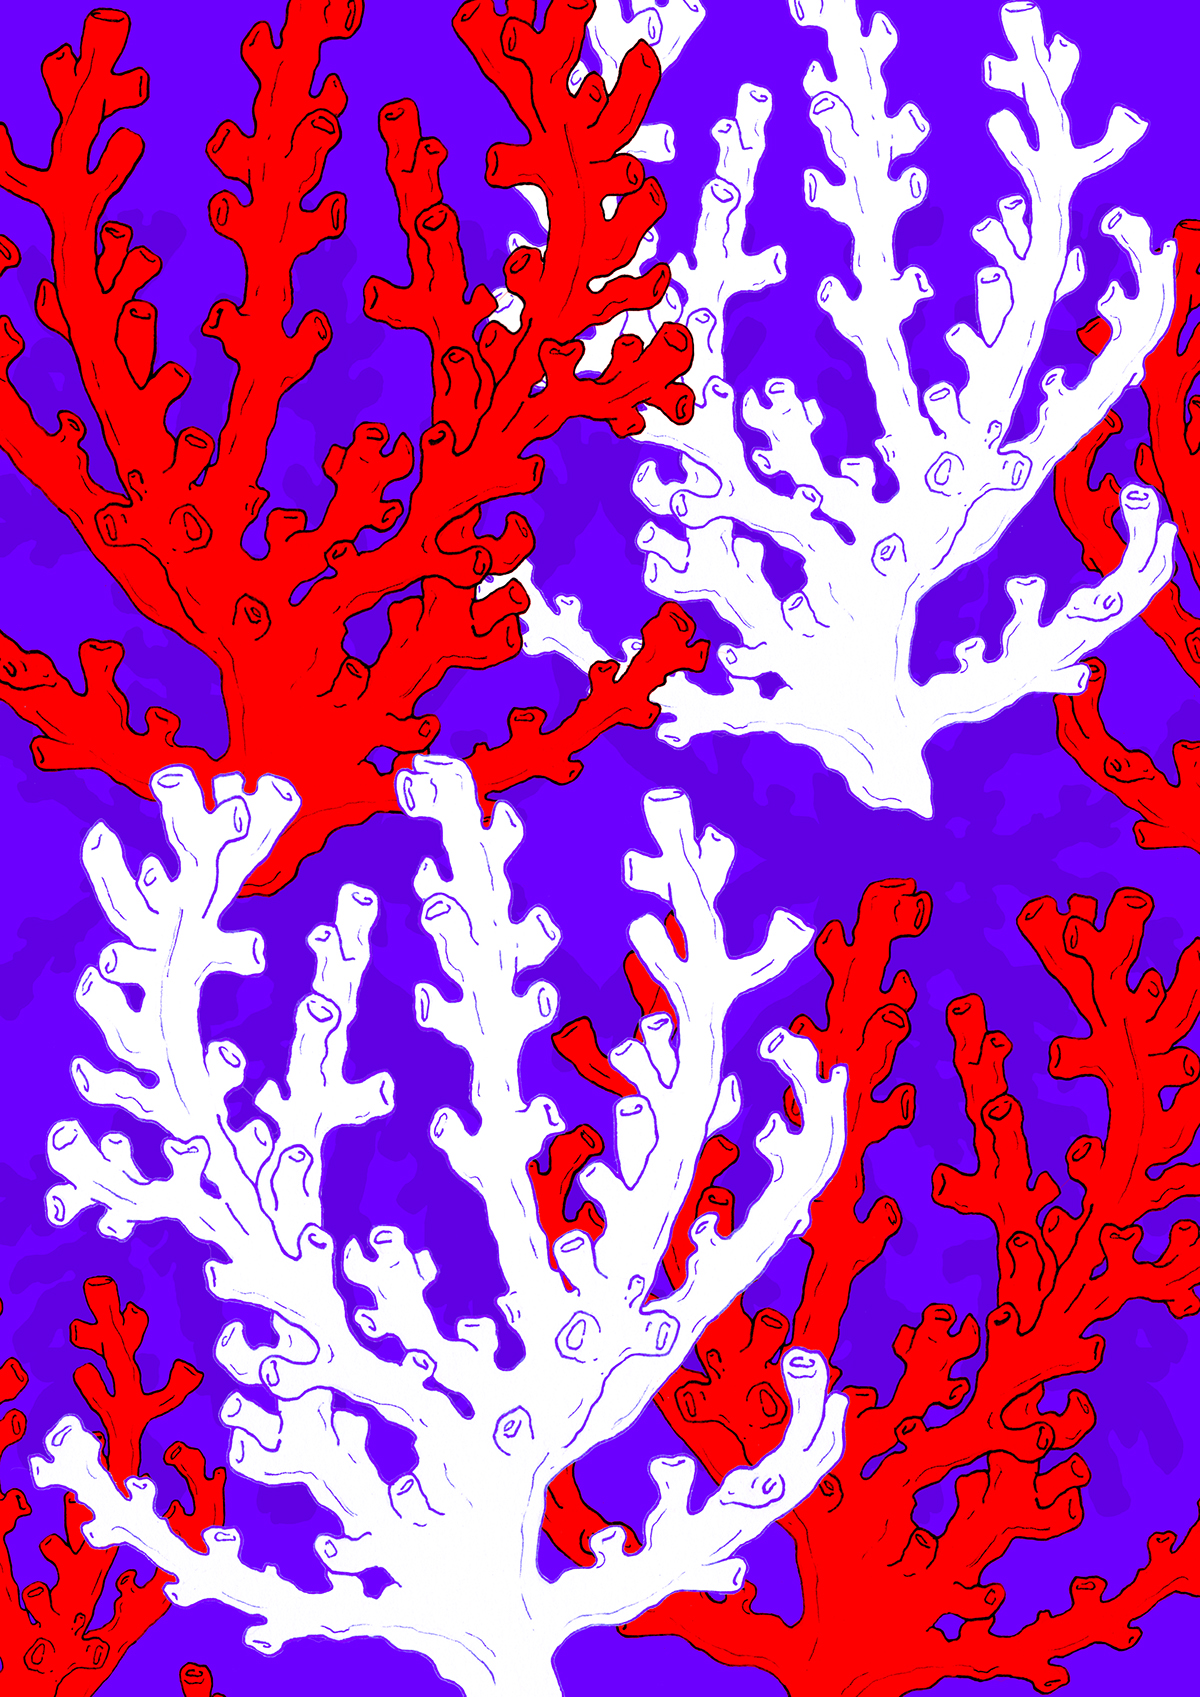 pattern Patterns sea coral print designing pattern designing muotsikka drawings